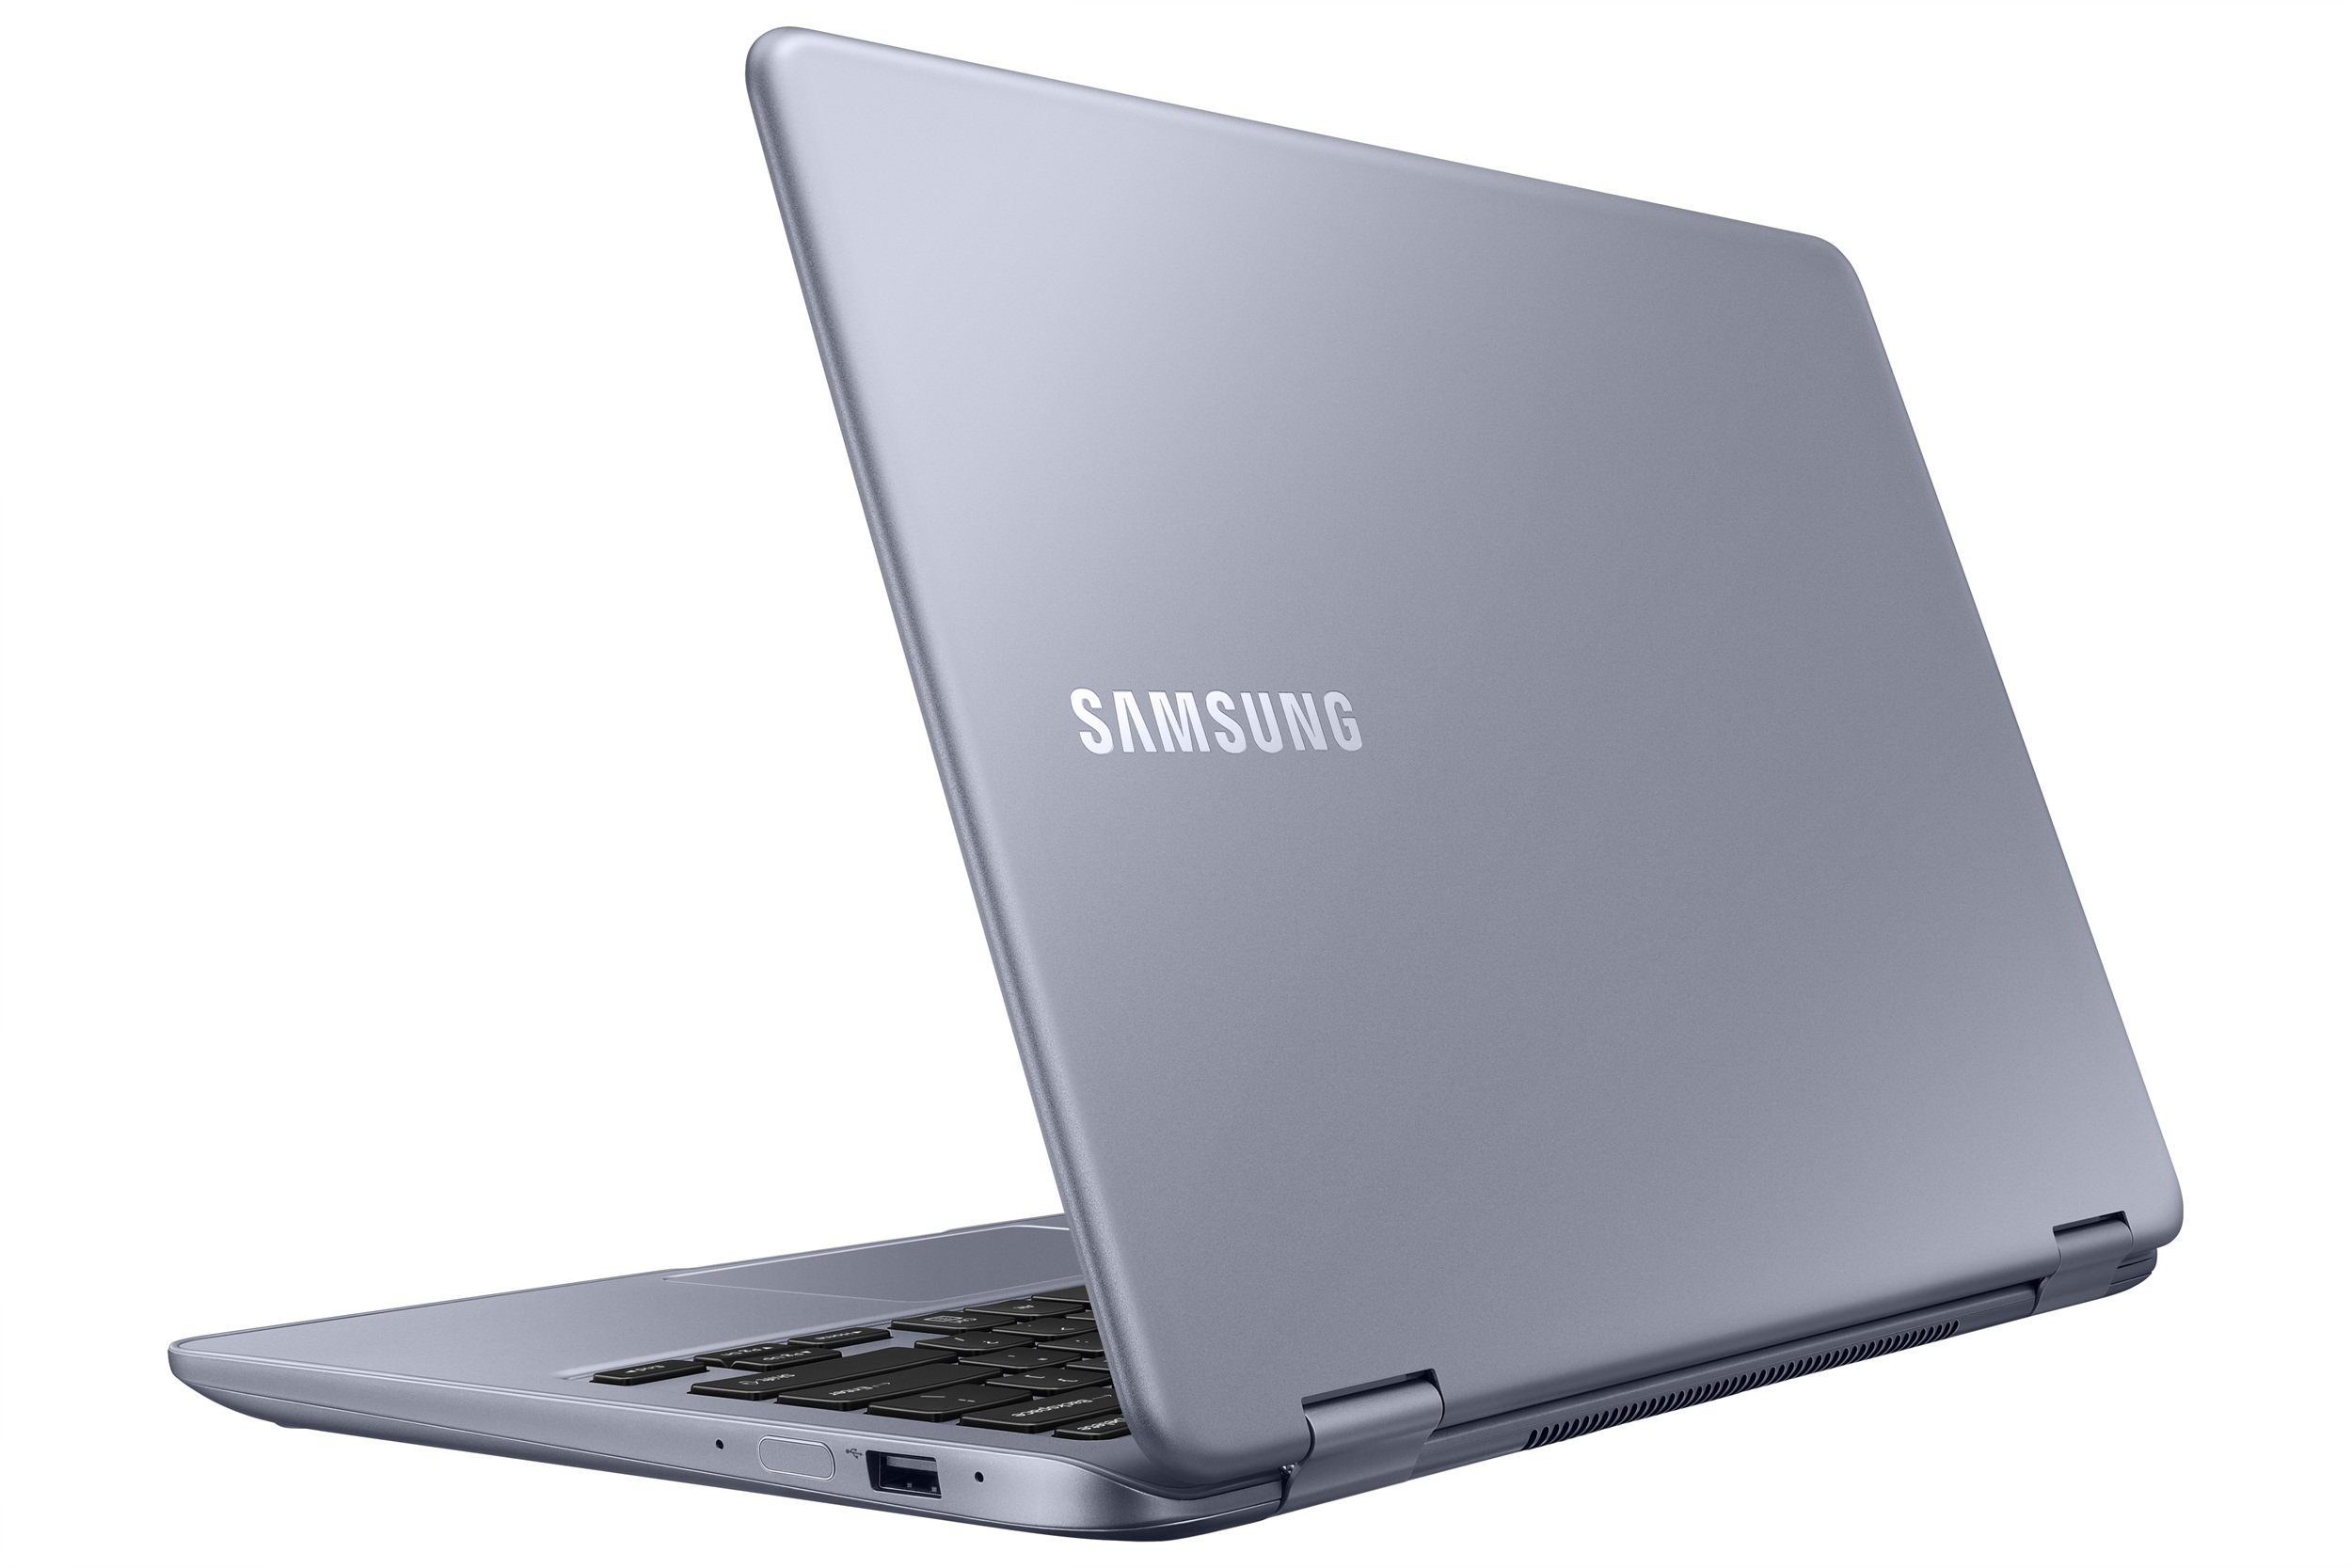 Еще до CES 2018 в Лас-Вегасе, во время которого мы ожидаем настоящего разлива этого типа и аналогичных конструкций, Samsung представила новый конвертируемый ноутбук - Notebook 7 Spin 2018